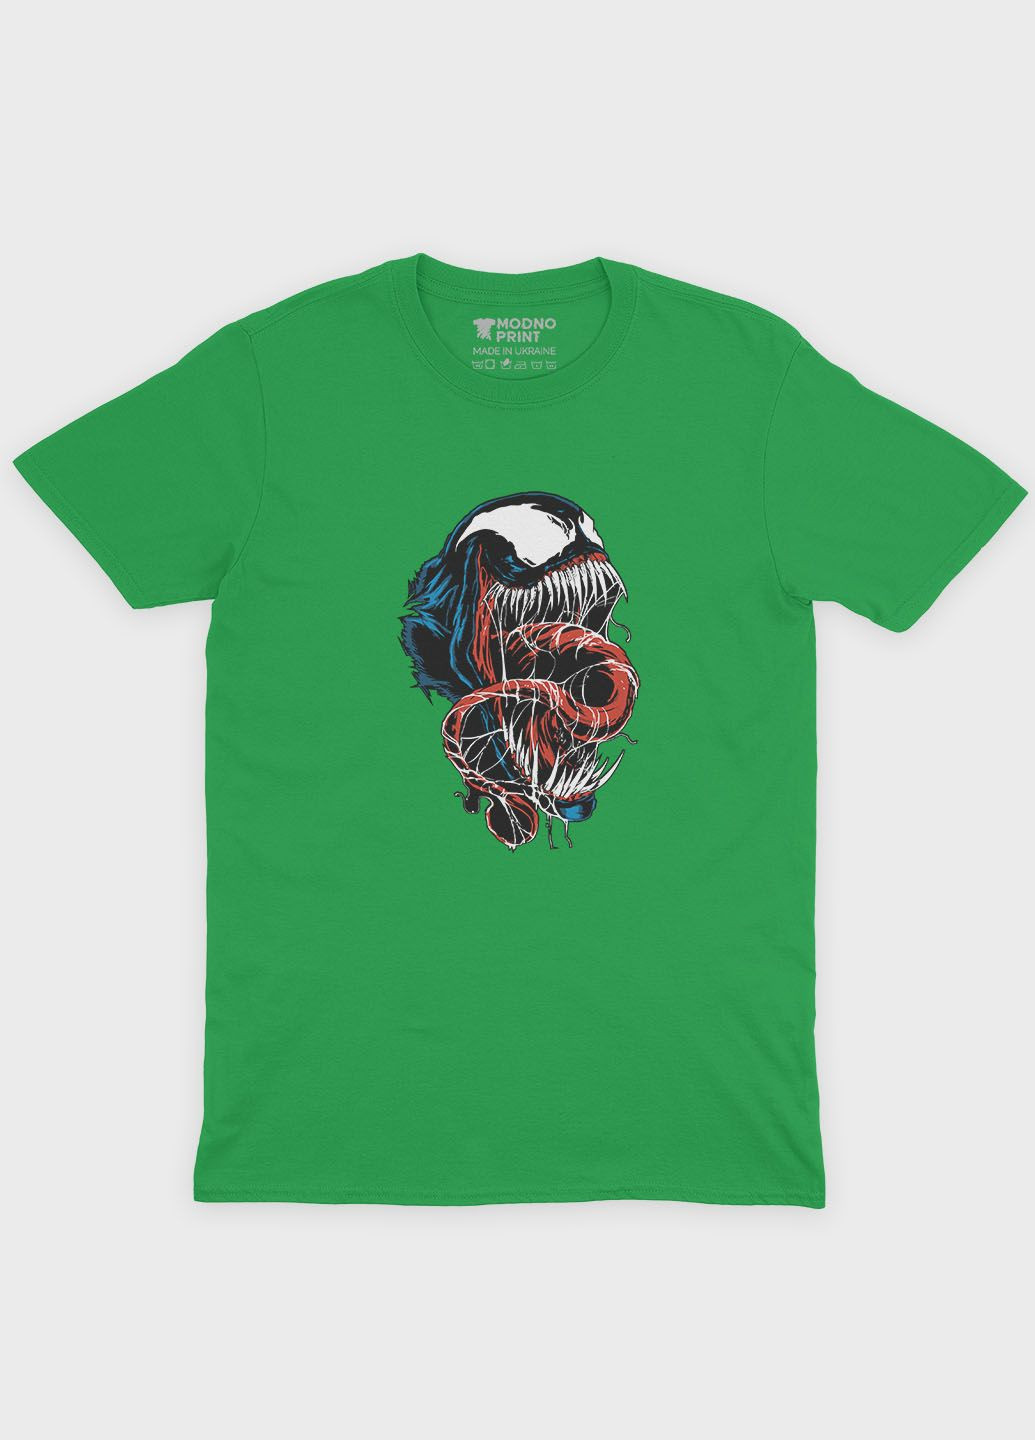 Зеленая демисезонная футболка для мальчика с принтом супервора - веном (ts001-1-keg-006-013-020-b) Modno